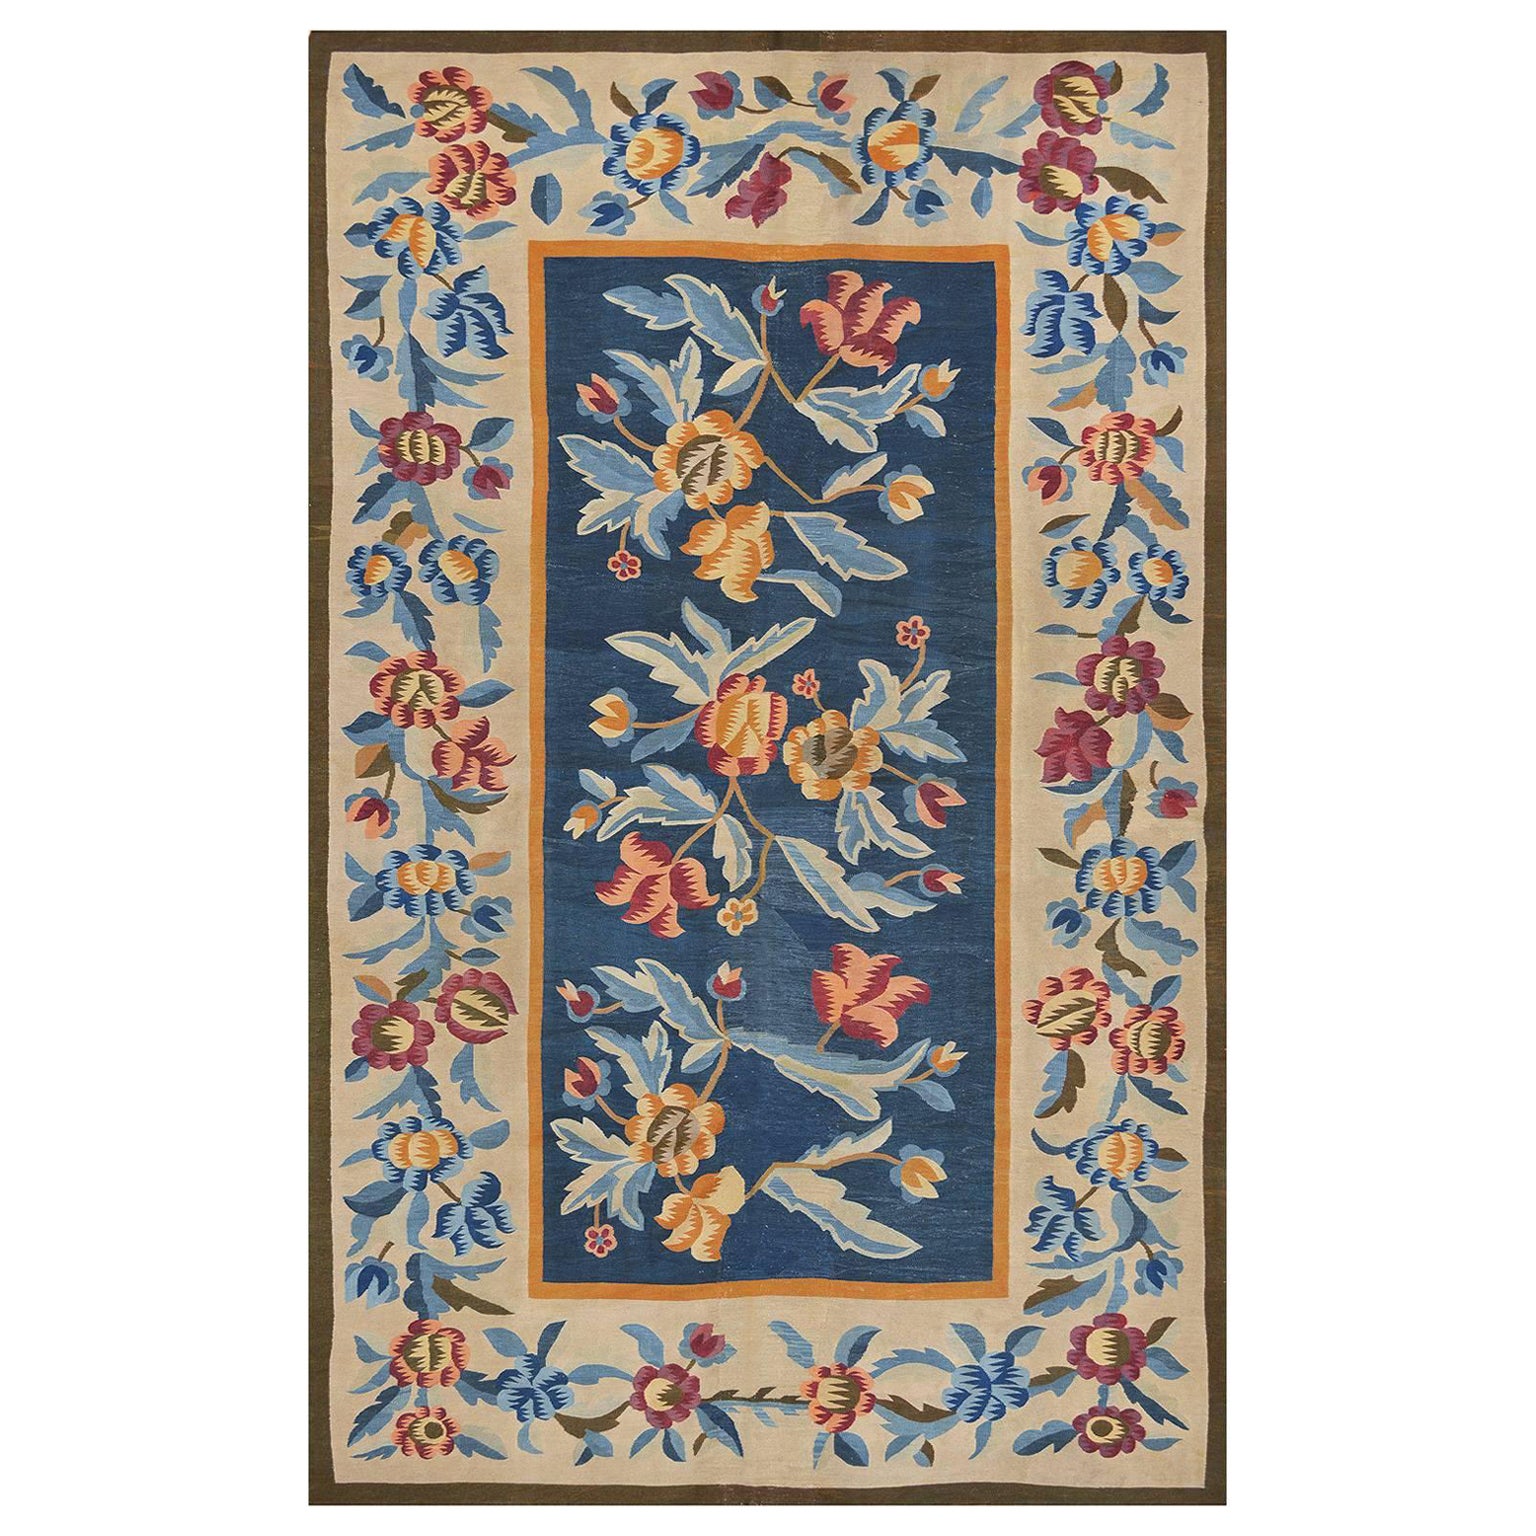 Bessarabischer Teppich aus Rumänien aus dem frühen 20. Jahrhundert